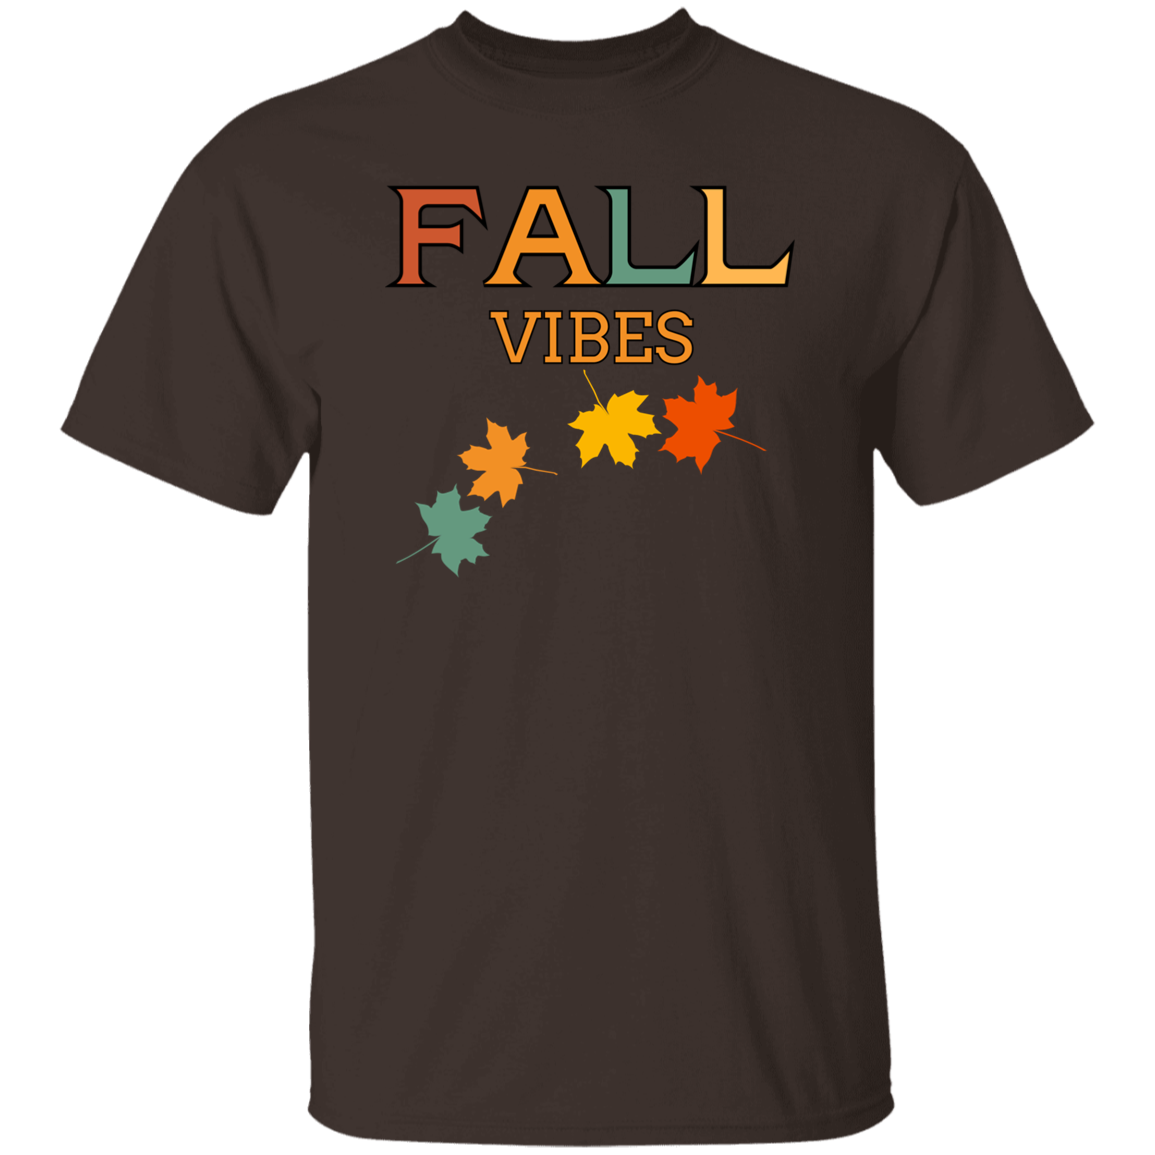 Vibraciones de otoño - Camiseta unisex